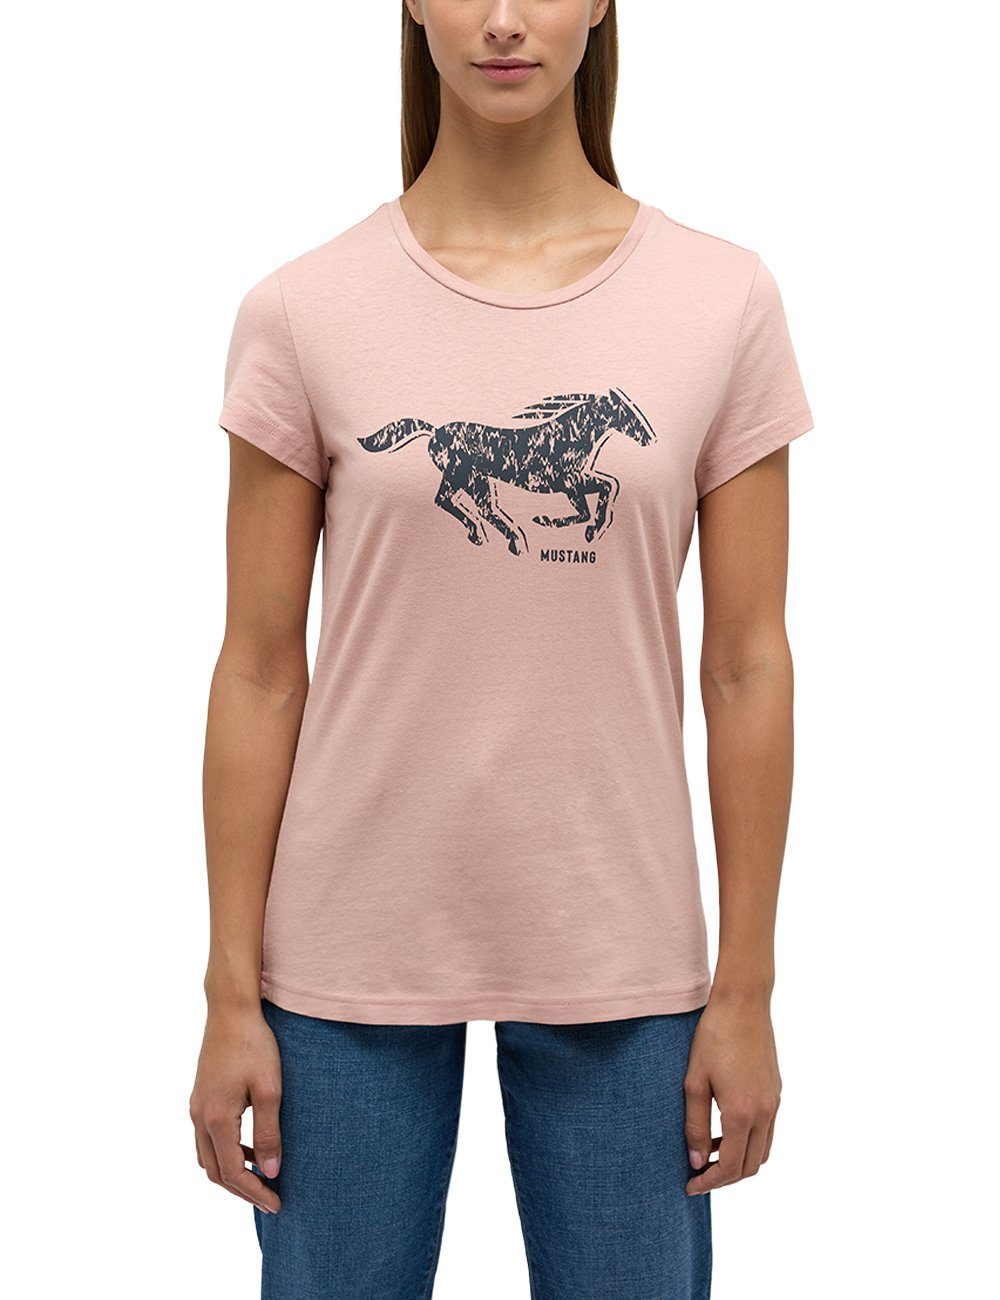 MUSTANG Kurzarmshirt Mustang T-Shirt Print-Shirt hellrosa